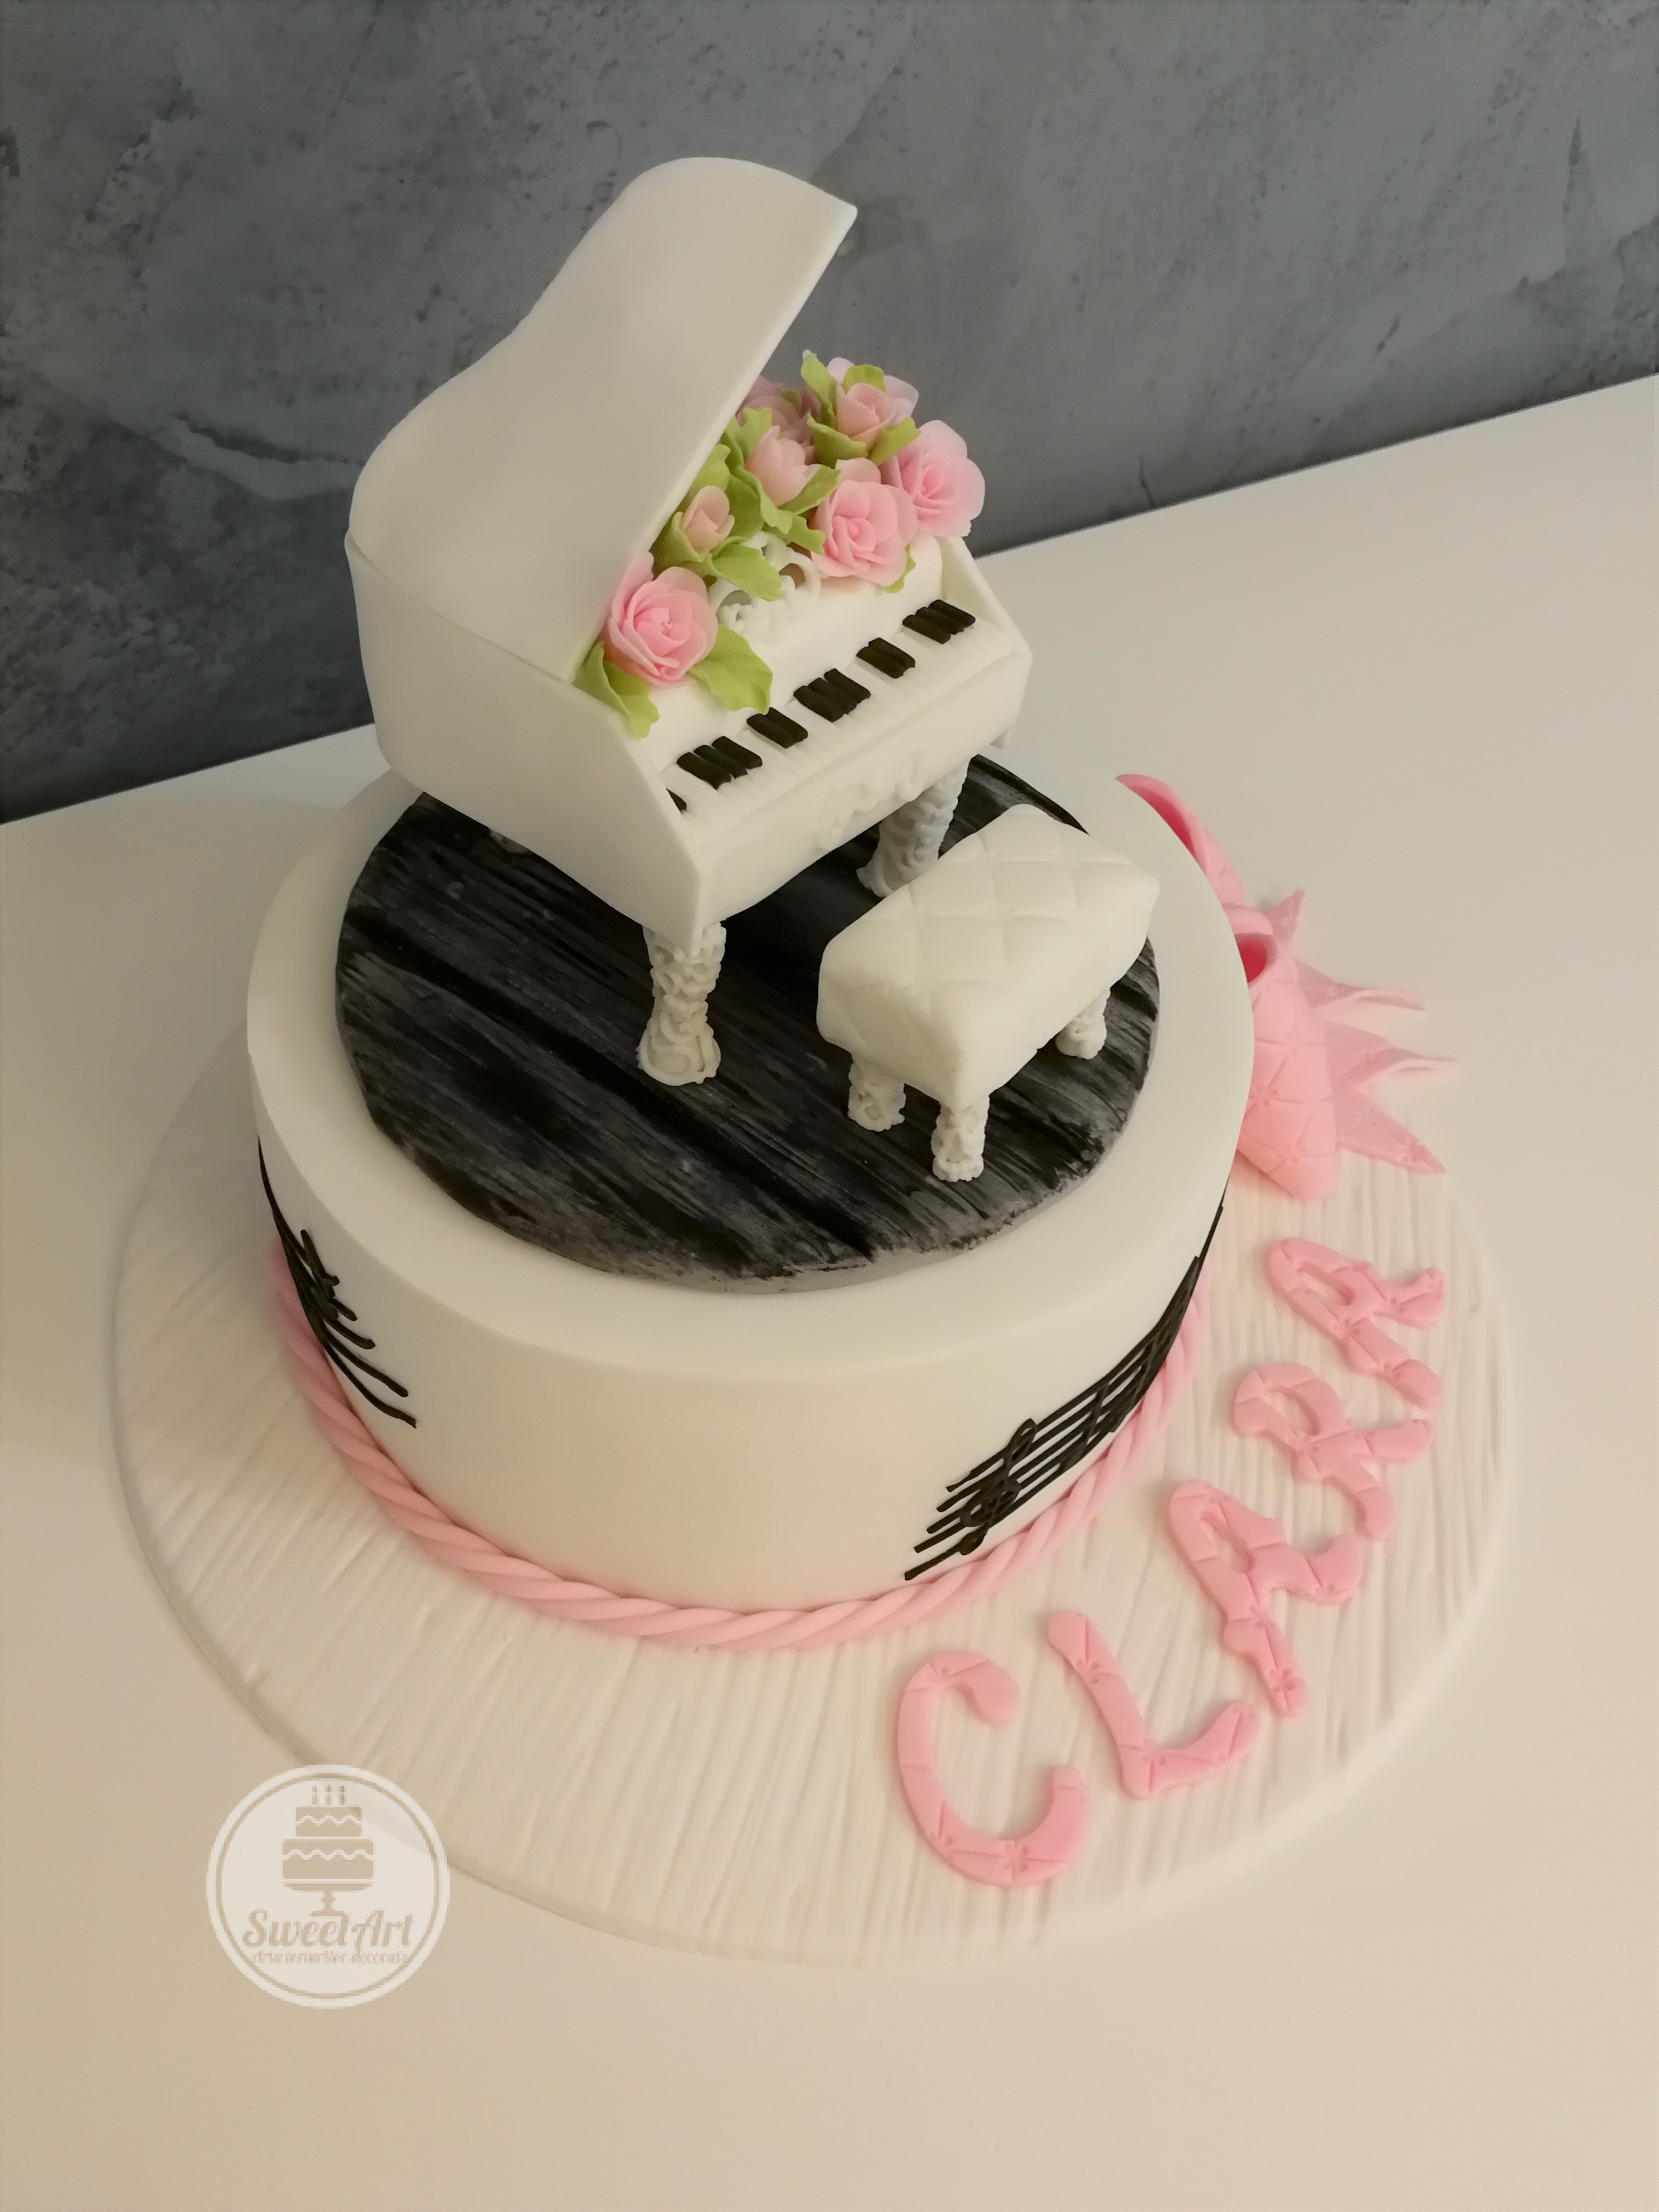 Tort pian cu aranjament cu trandafiri roz și frunze și banchetă albă pian pe parchet lemn negru, portativ cu note muzicale, fundă roz, tort alb pe platou lemn alb